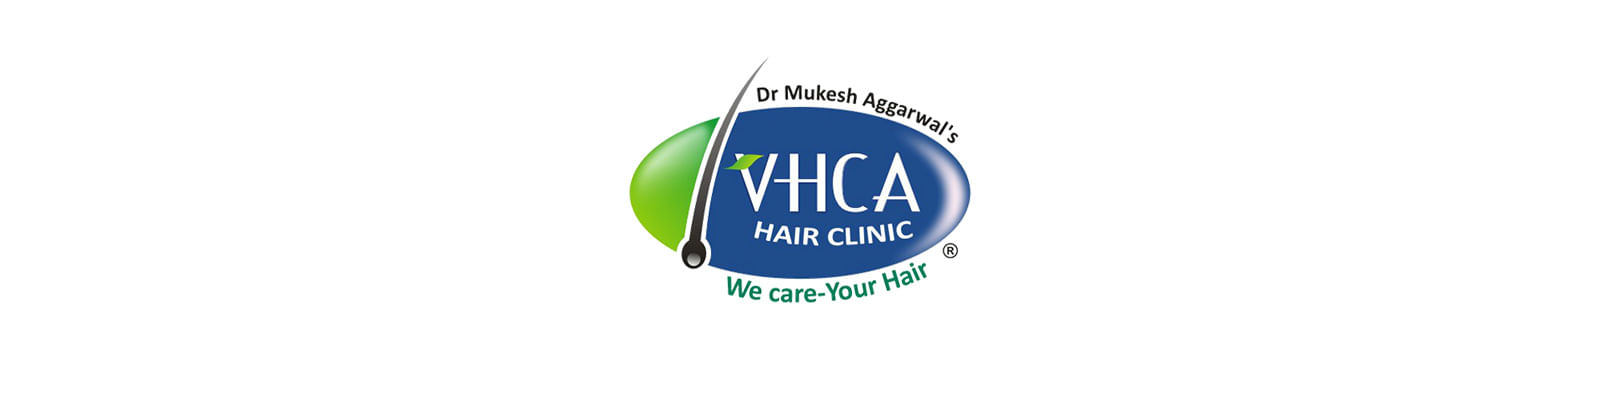 VHCA Hair Clinic - Gurgaon